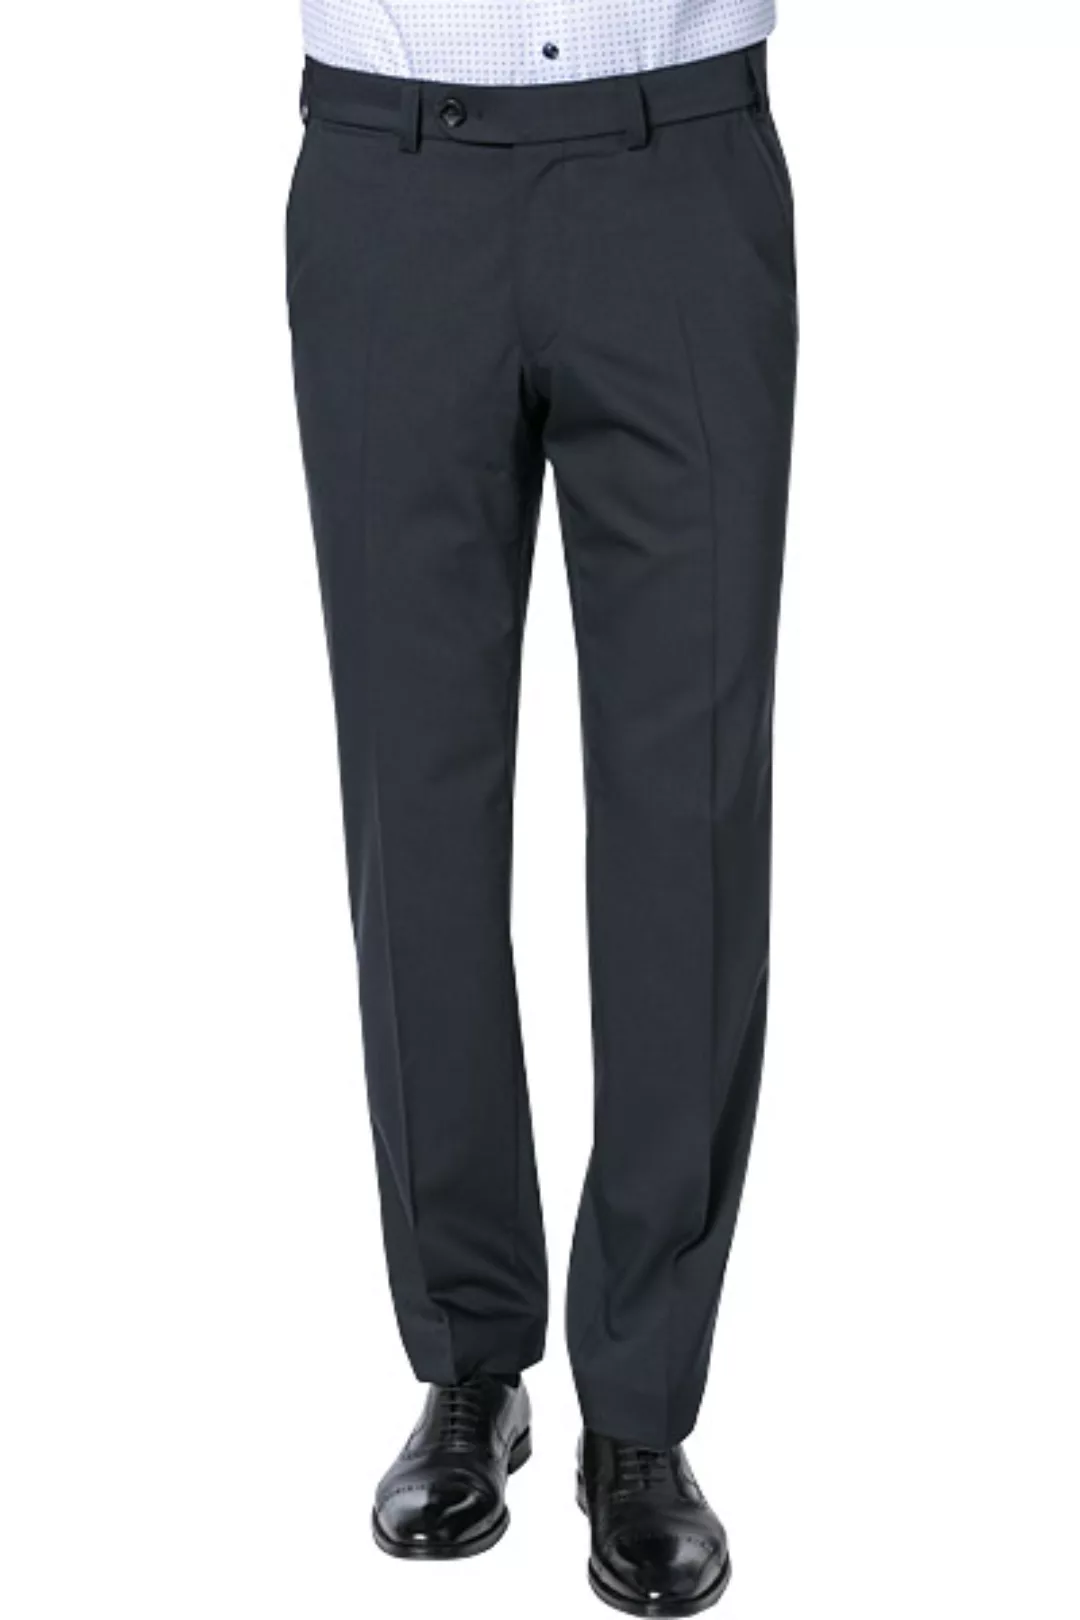 EUREX by BRAX Anzughose Style JAN 317 günstig online kaufen